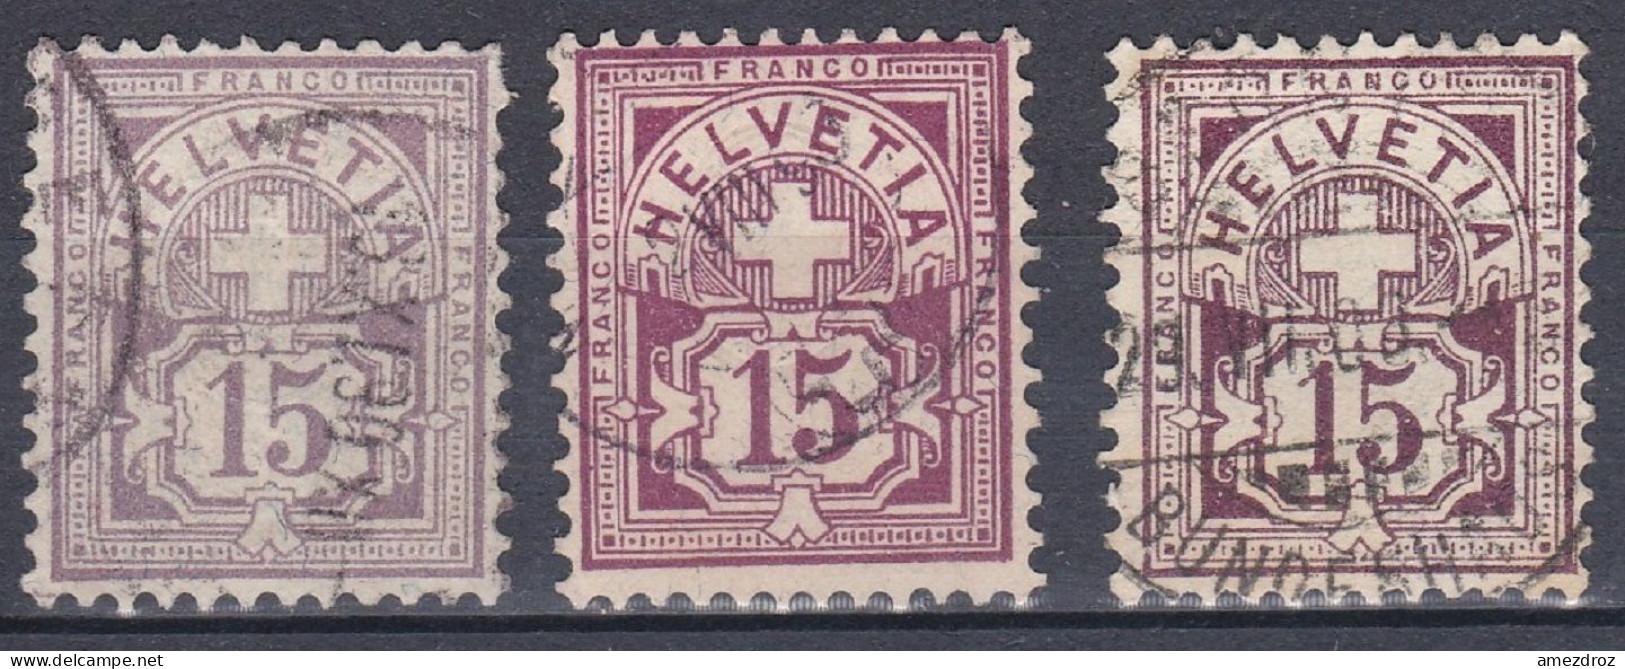 Suisse 1882 N° 70 70a & 70b Croix Et Bouclier (J18) - Gebraucht